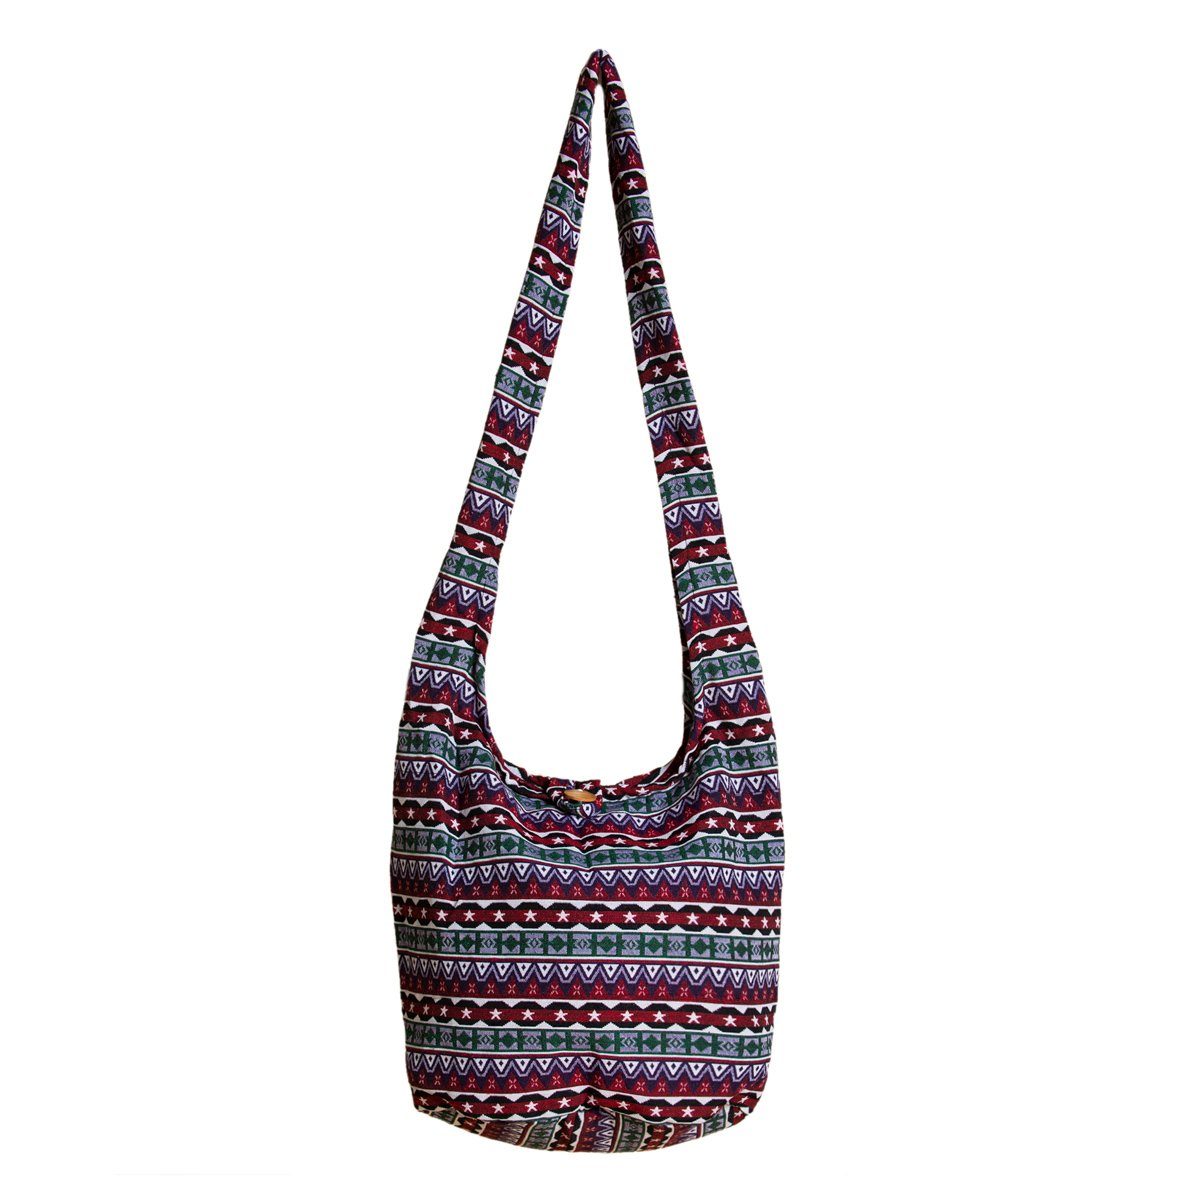 PANASIAM Strandtasche Schulterbeutel in gewebten Designs aus 100 % Baumwolle Umhängetasche, In 2 Größen Beuteltasche auch als Wickeltasche und Handtasche geeignet Bordeauxrotton | Canvas-Taschen